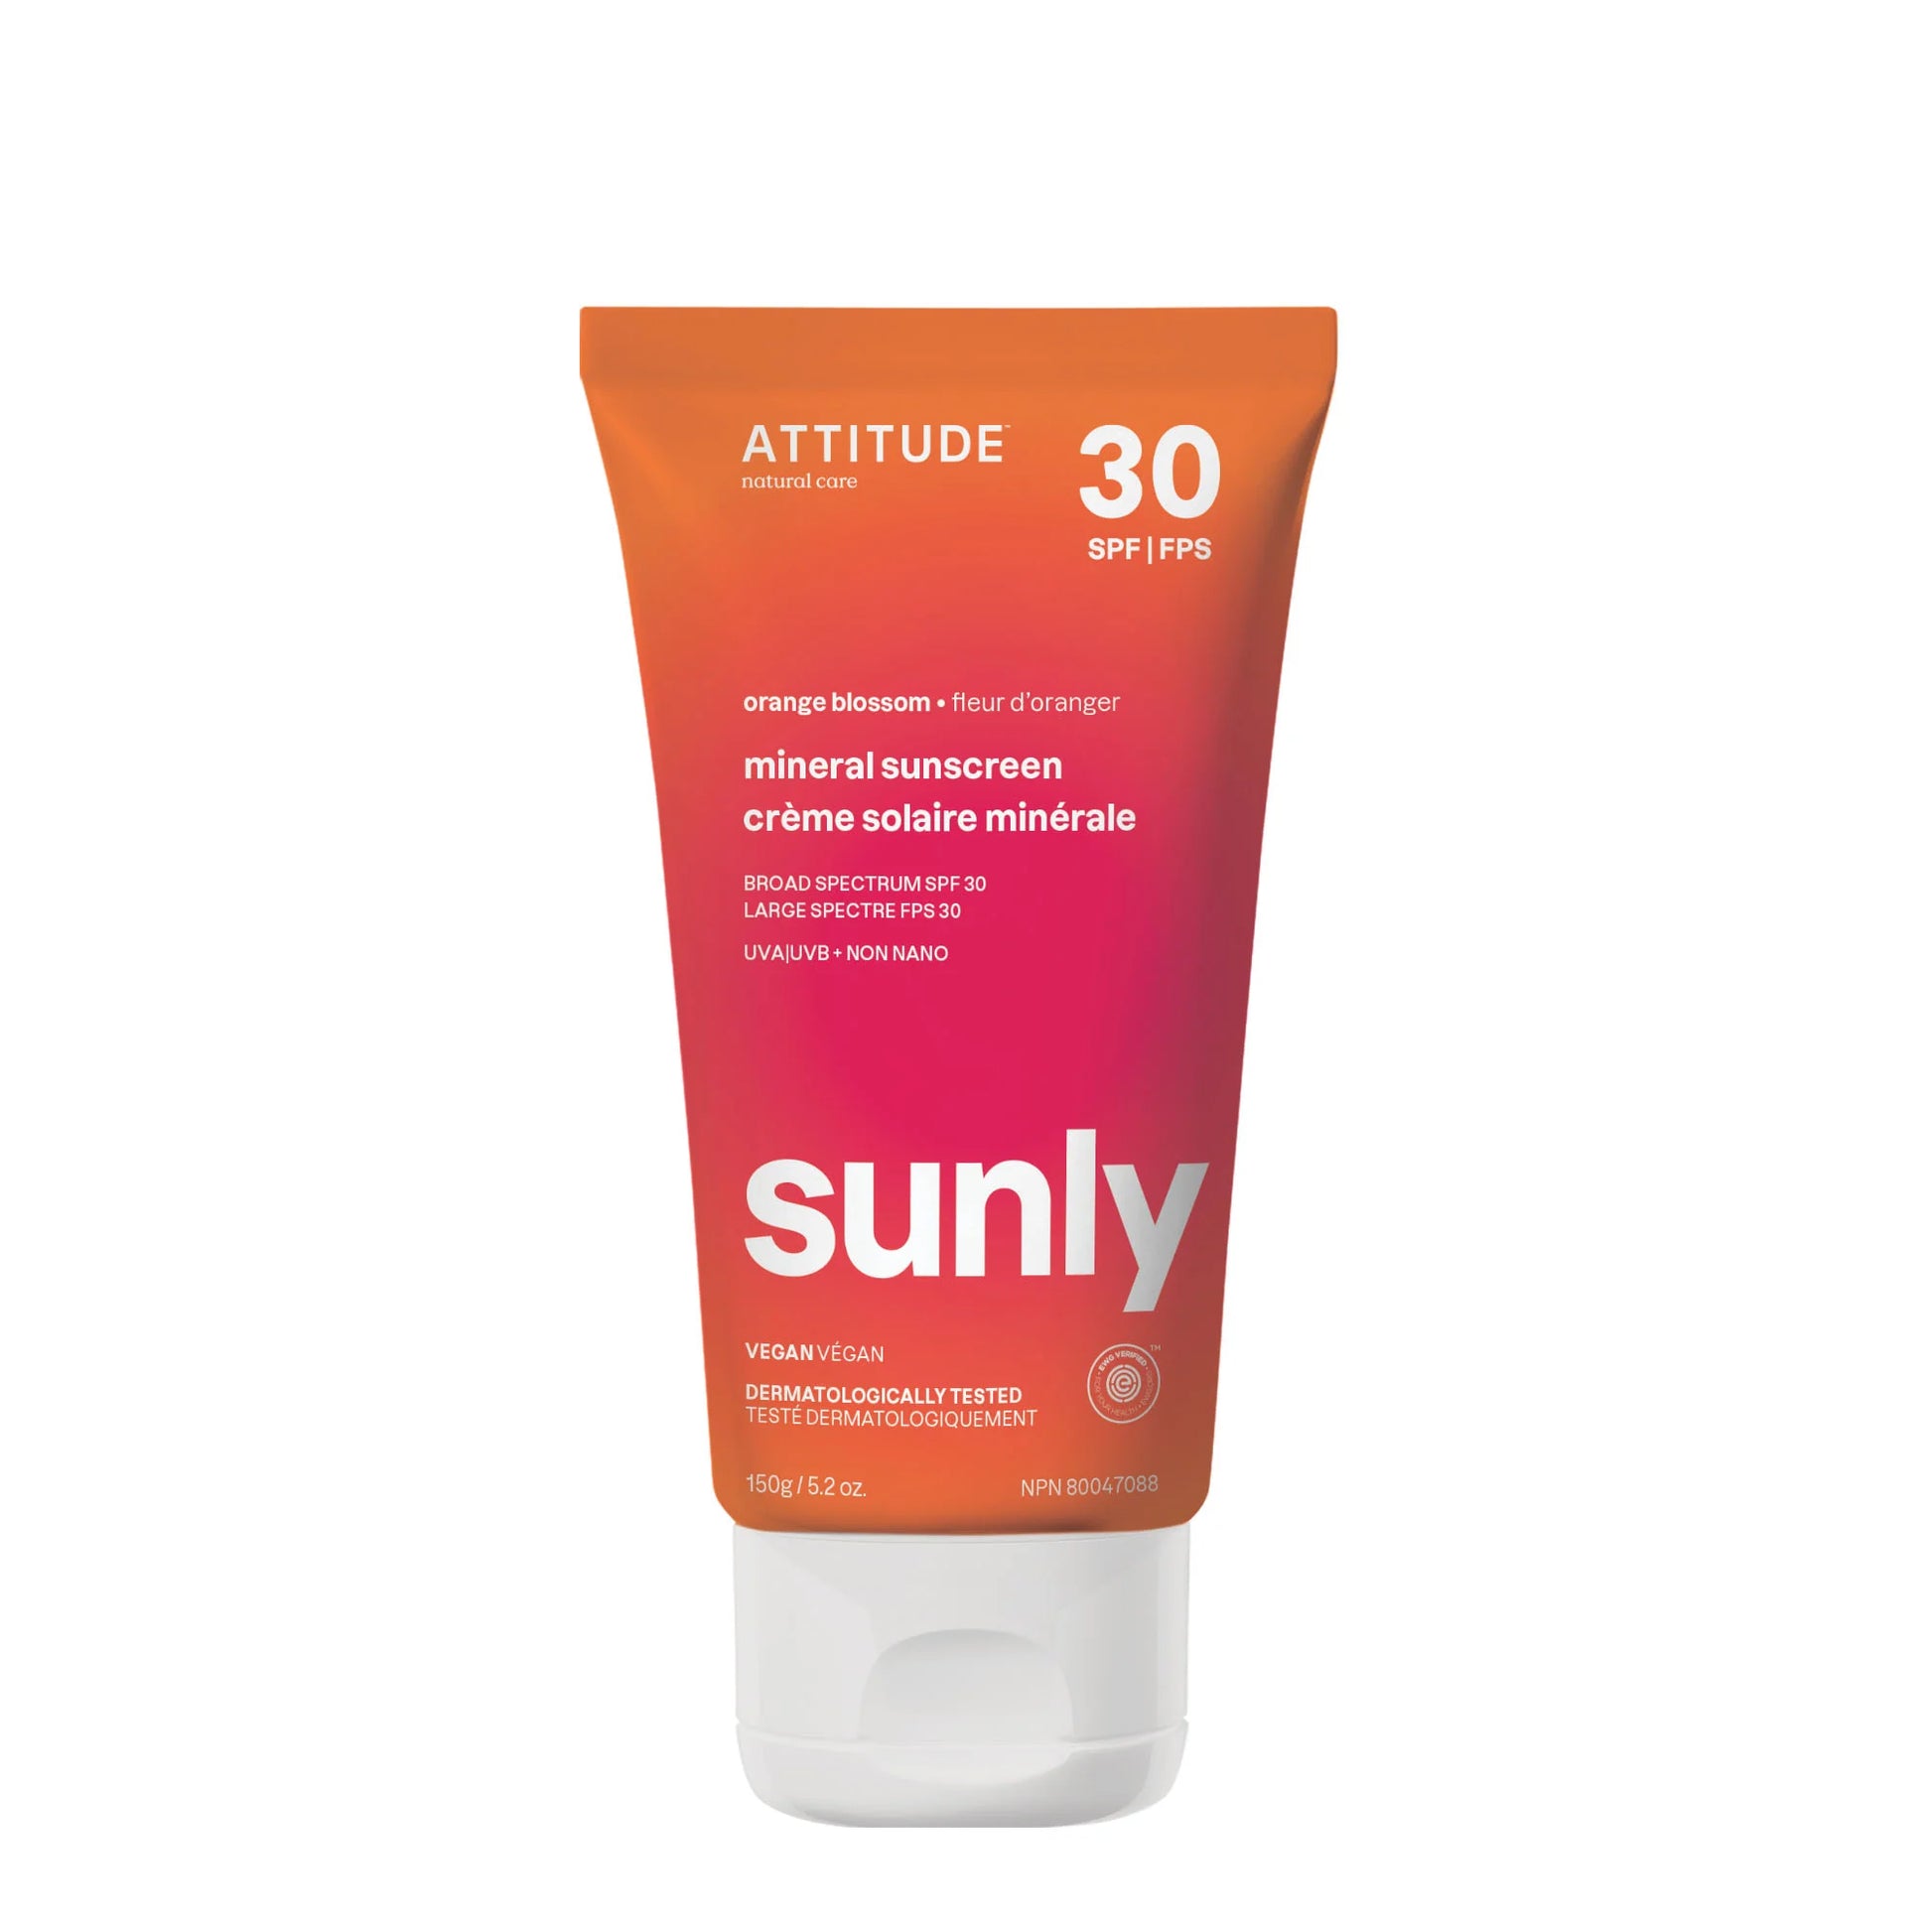 ATTITUDE SUNLY Sunscreen – SPF 30 – Orange Blossom 150g